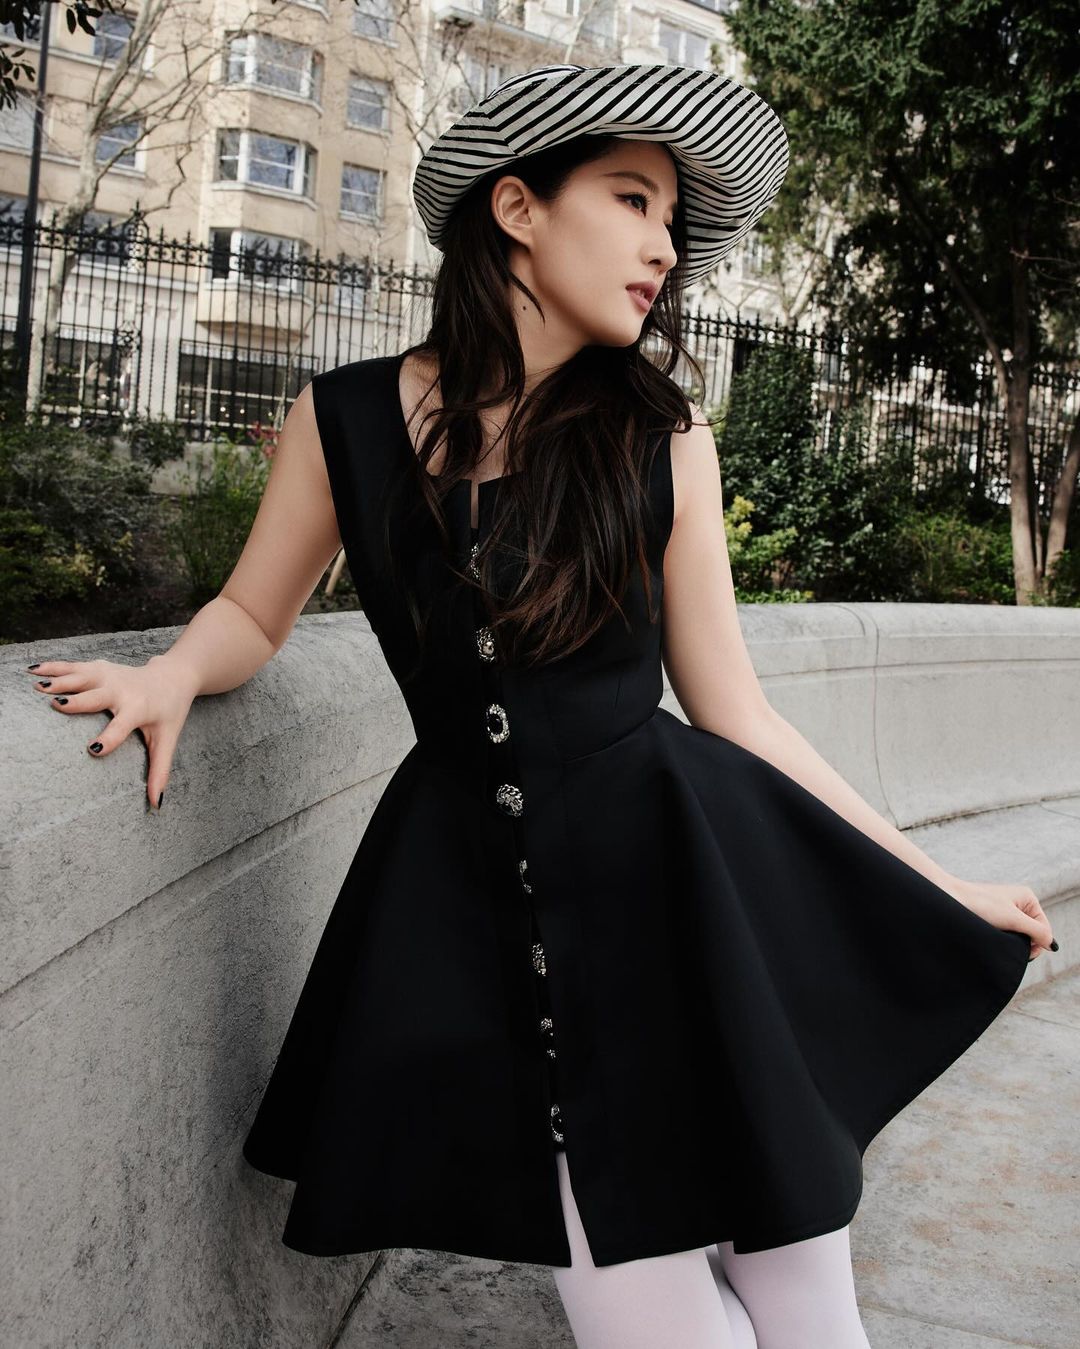 Little Black Dress và những ý tưởng mặc đẹp chiếc váy đen nhỏ- Ảnh 3.